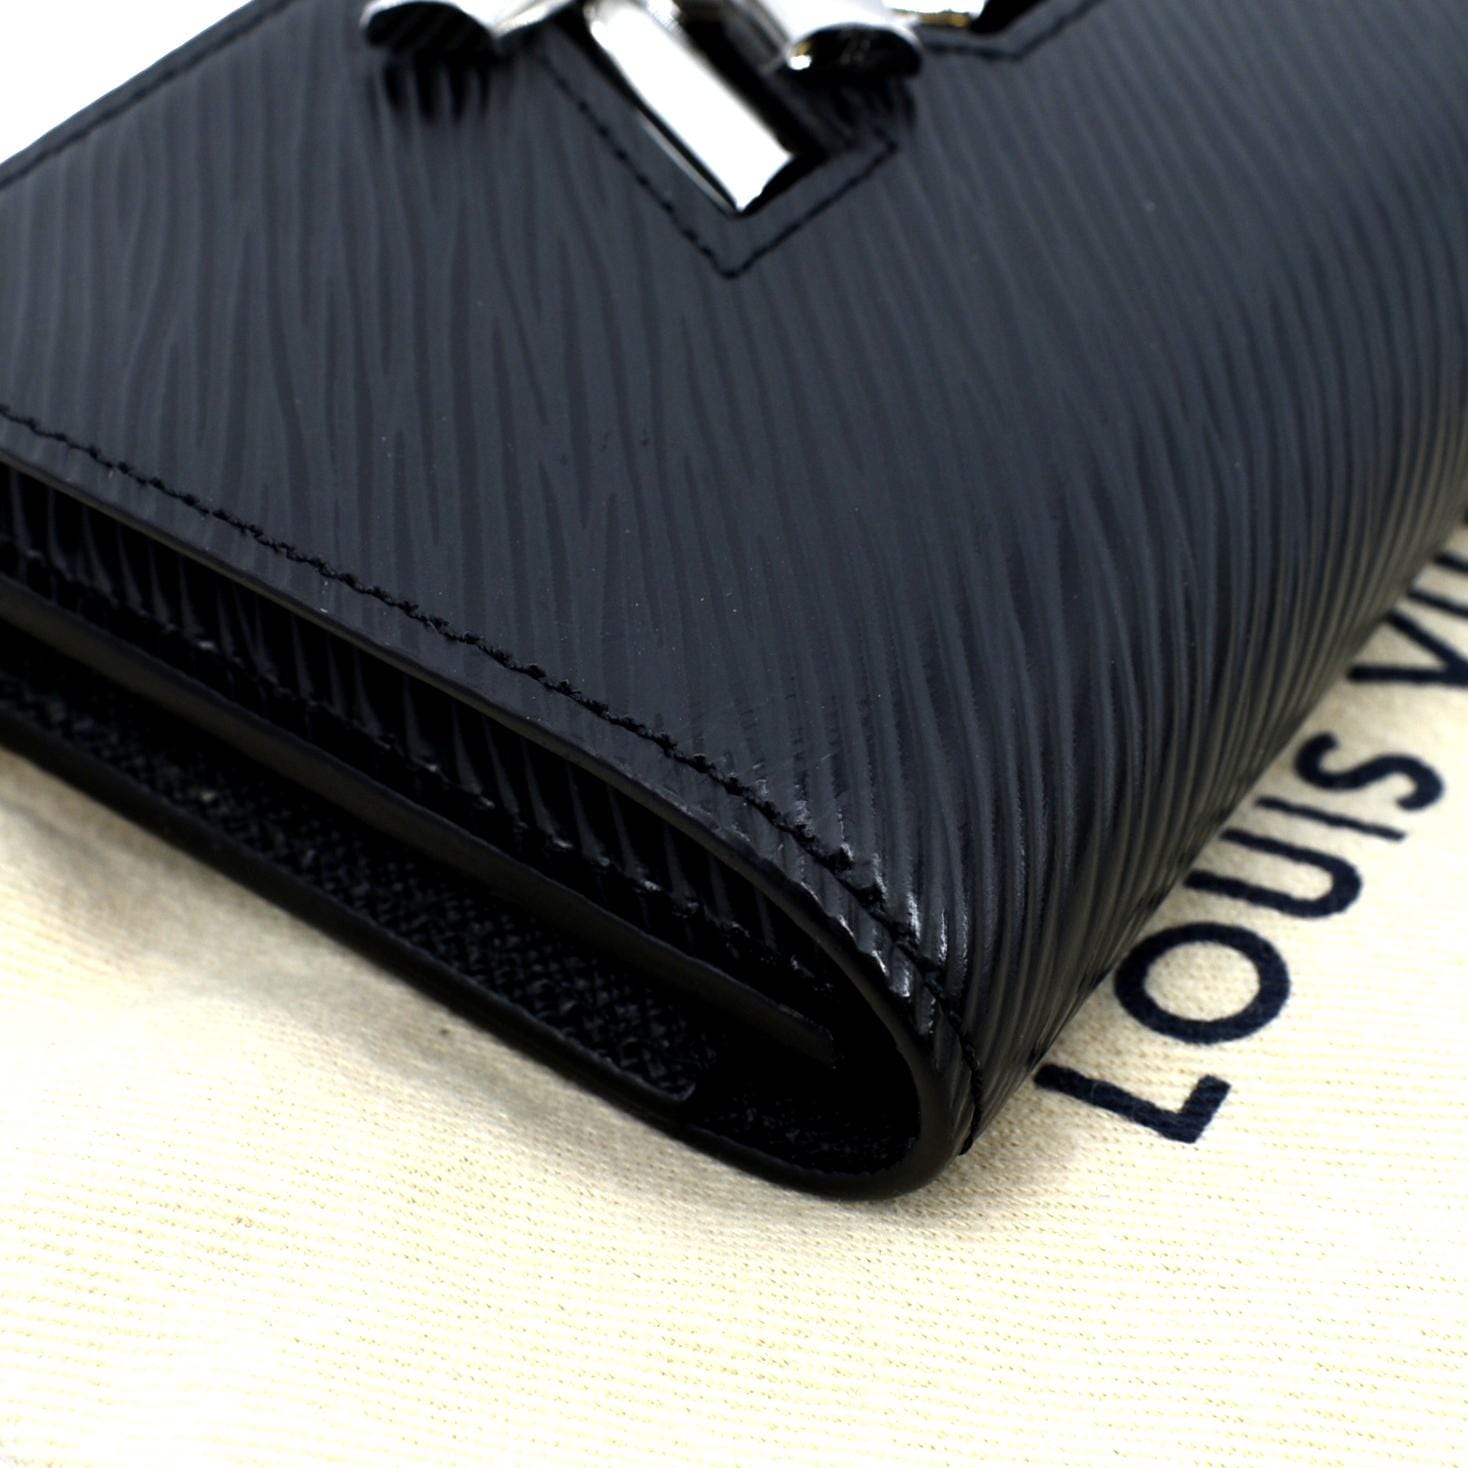 NTWRK - Louis Vuitton Multiple Wallet Epi Leather Black